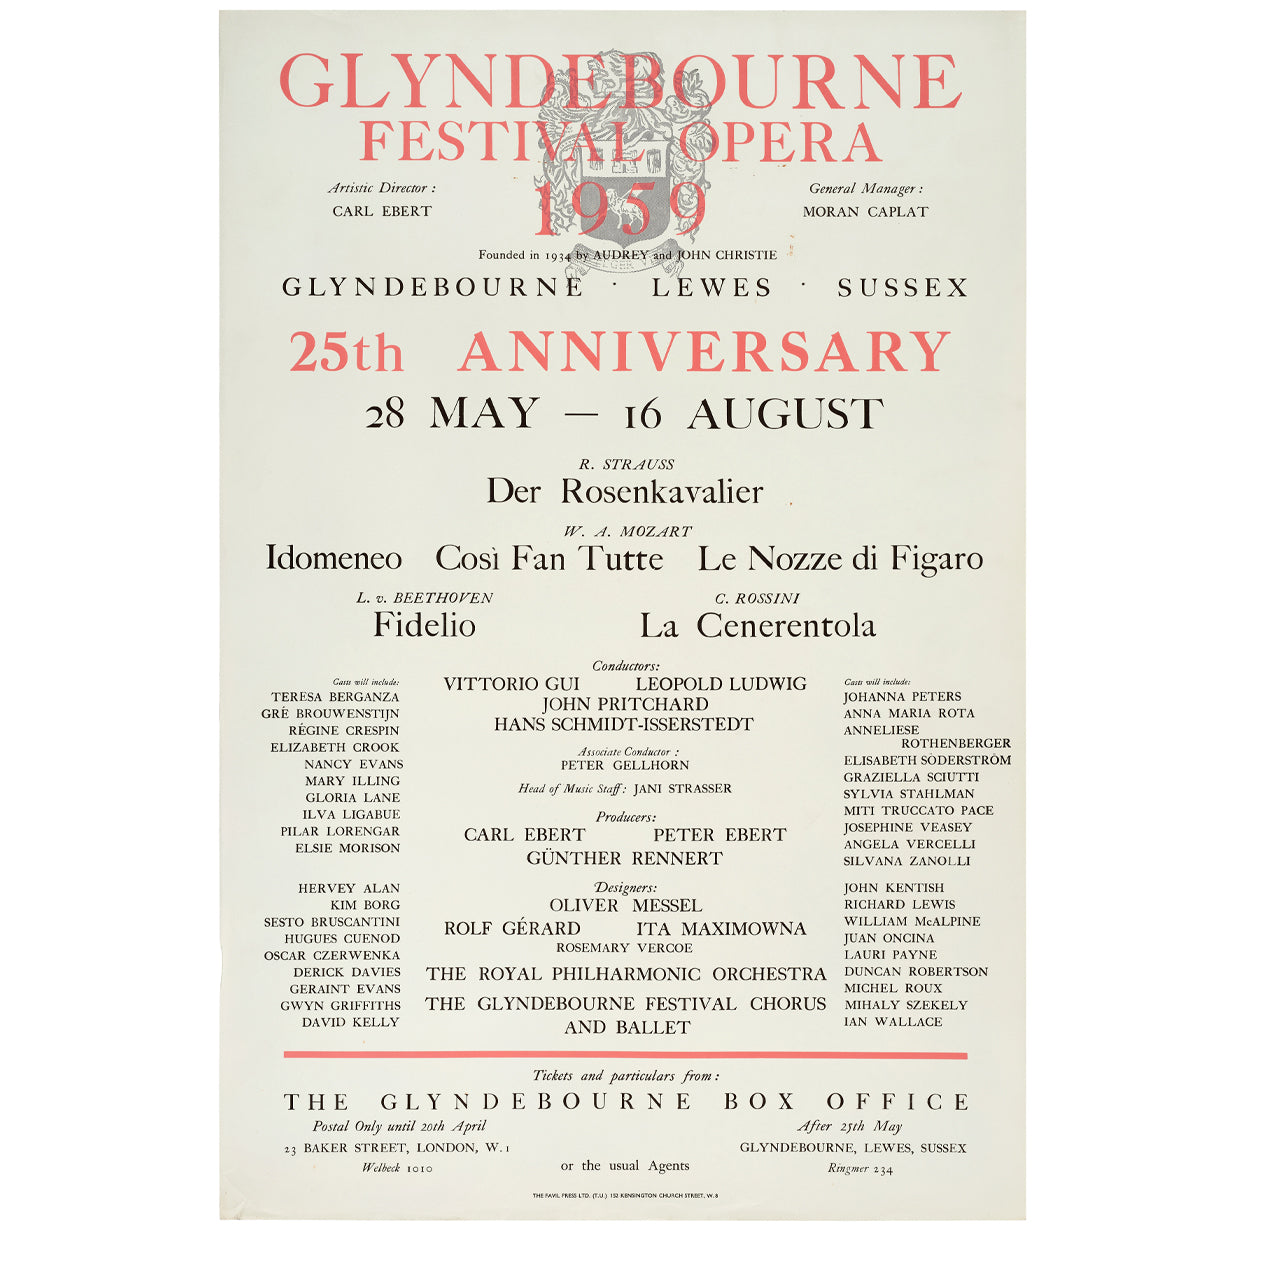 Glyndebourne Festival 1959 Poster Glyndebourne Shop